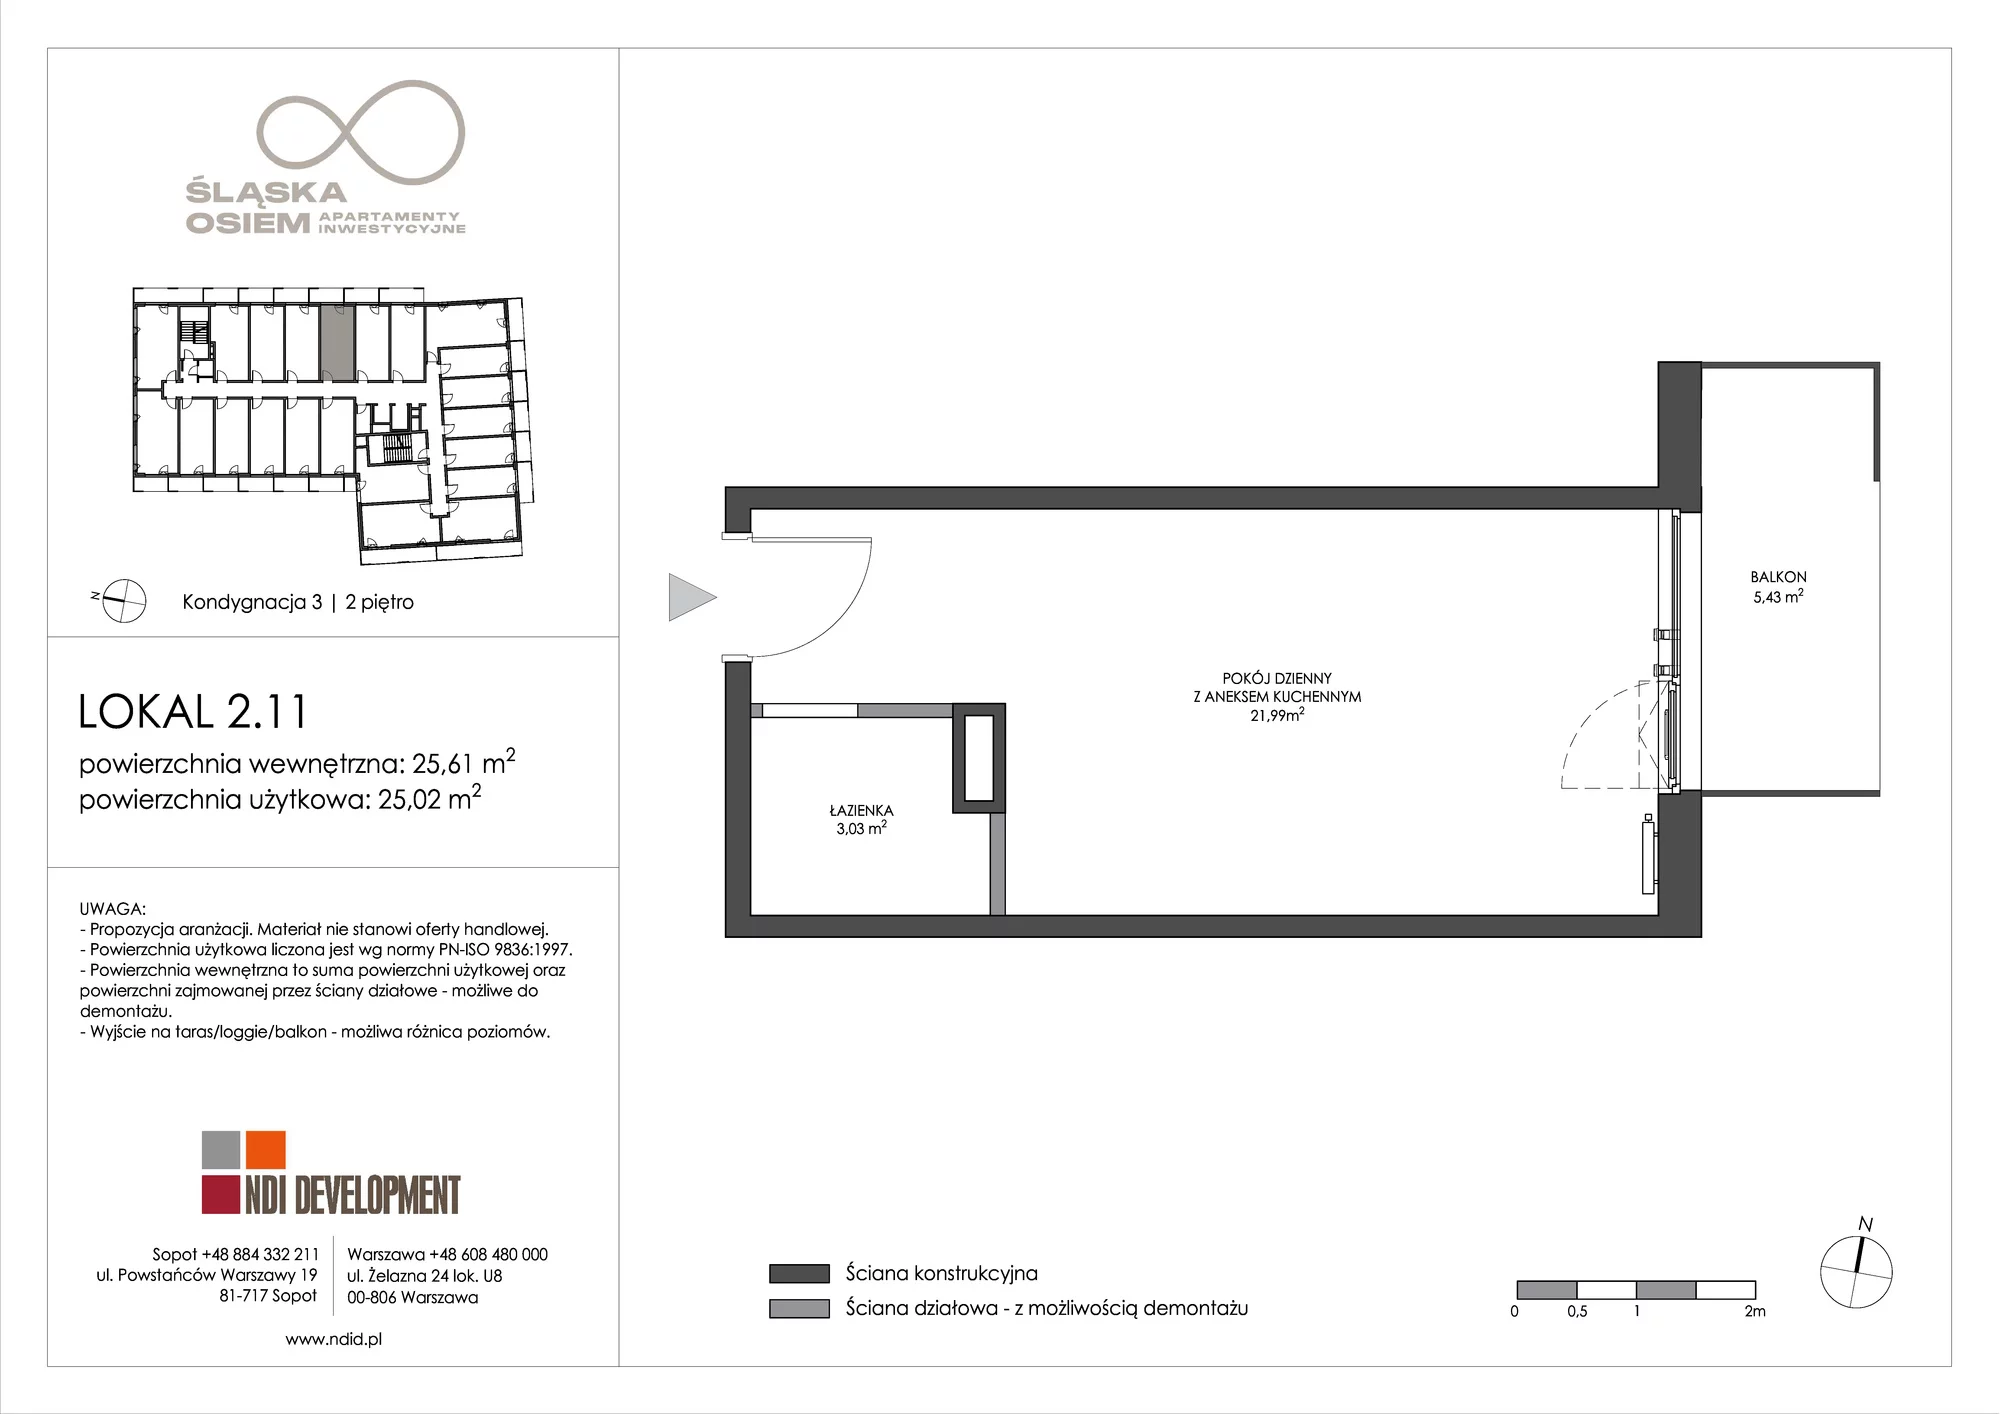 Apartament inwestycyjny 25,61 m², piętro 2, oferta nr 2.11, Śląska Osiem, Gdańsk, Przymorze, ul. Śląska 8